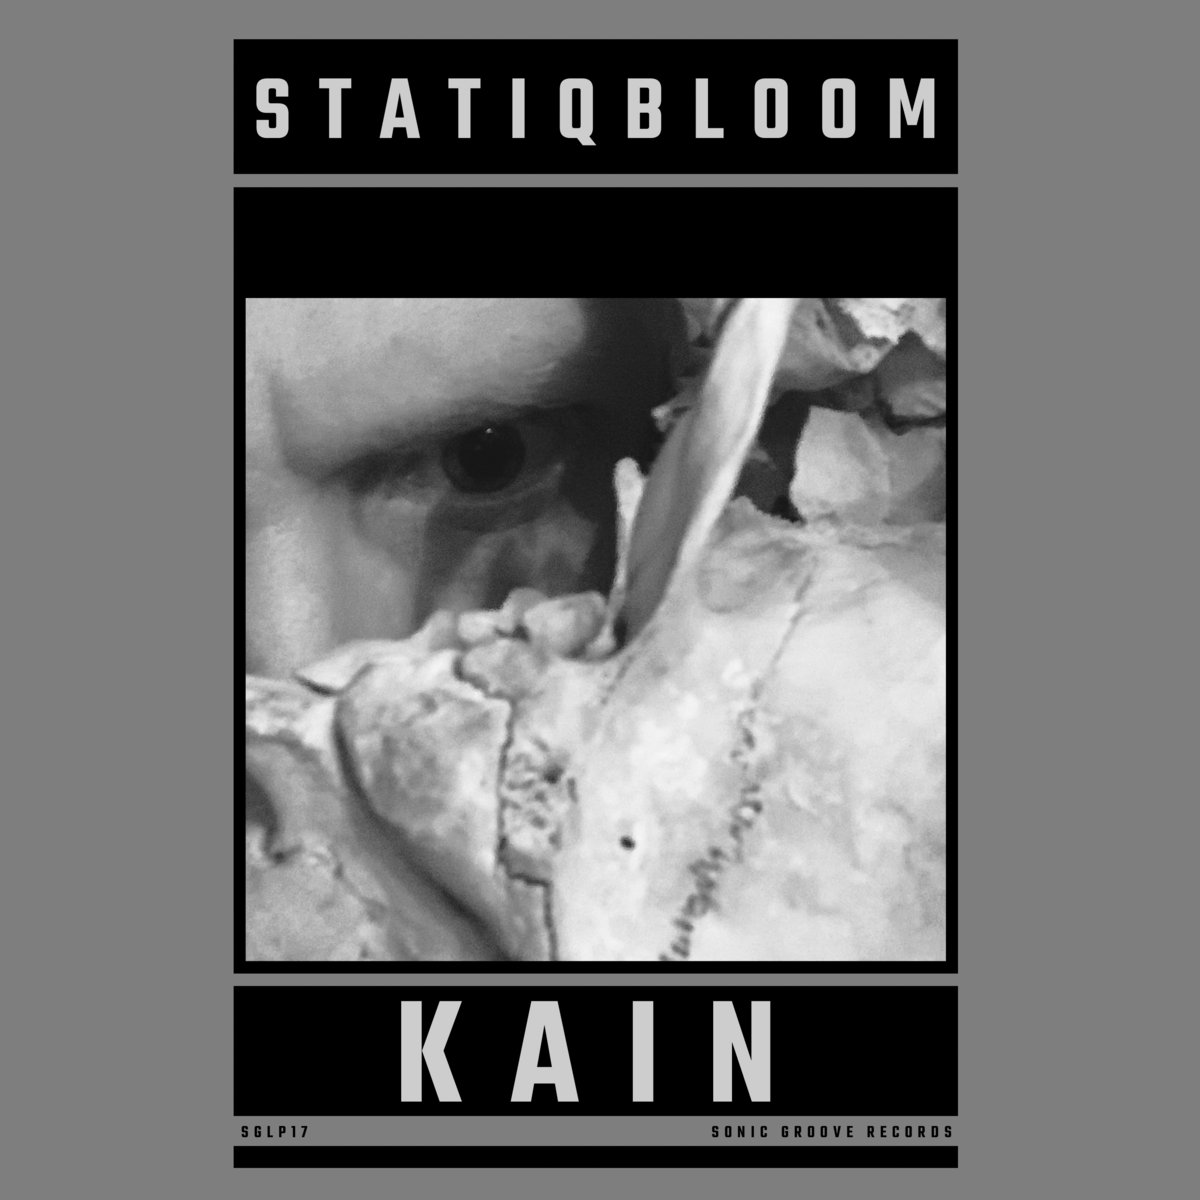 Statiqbloom, “Kain”